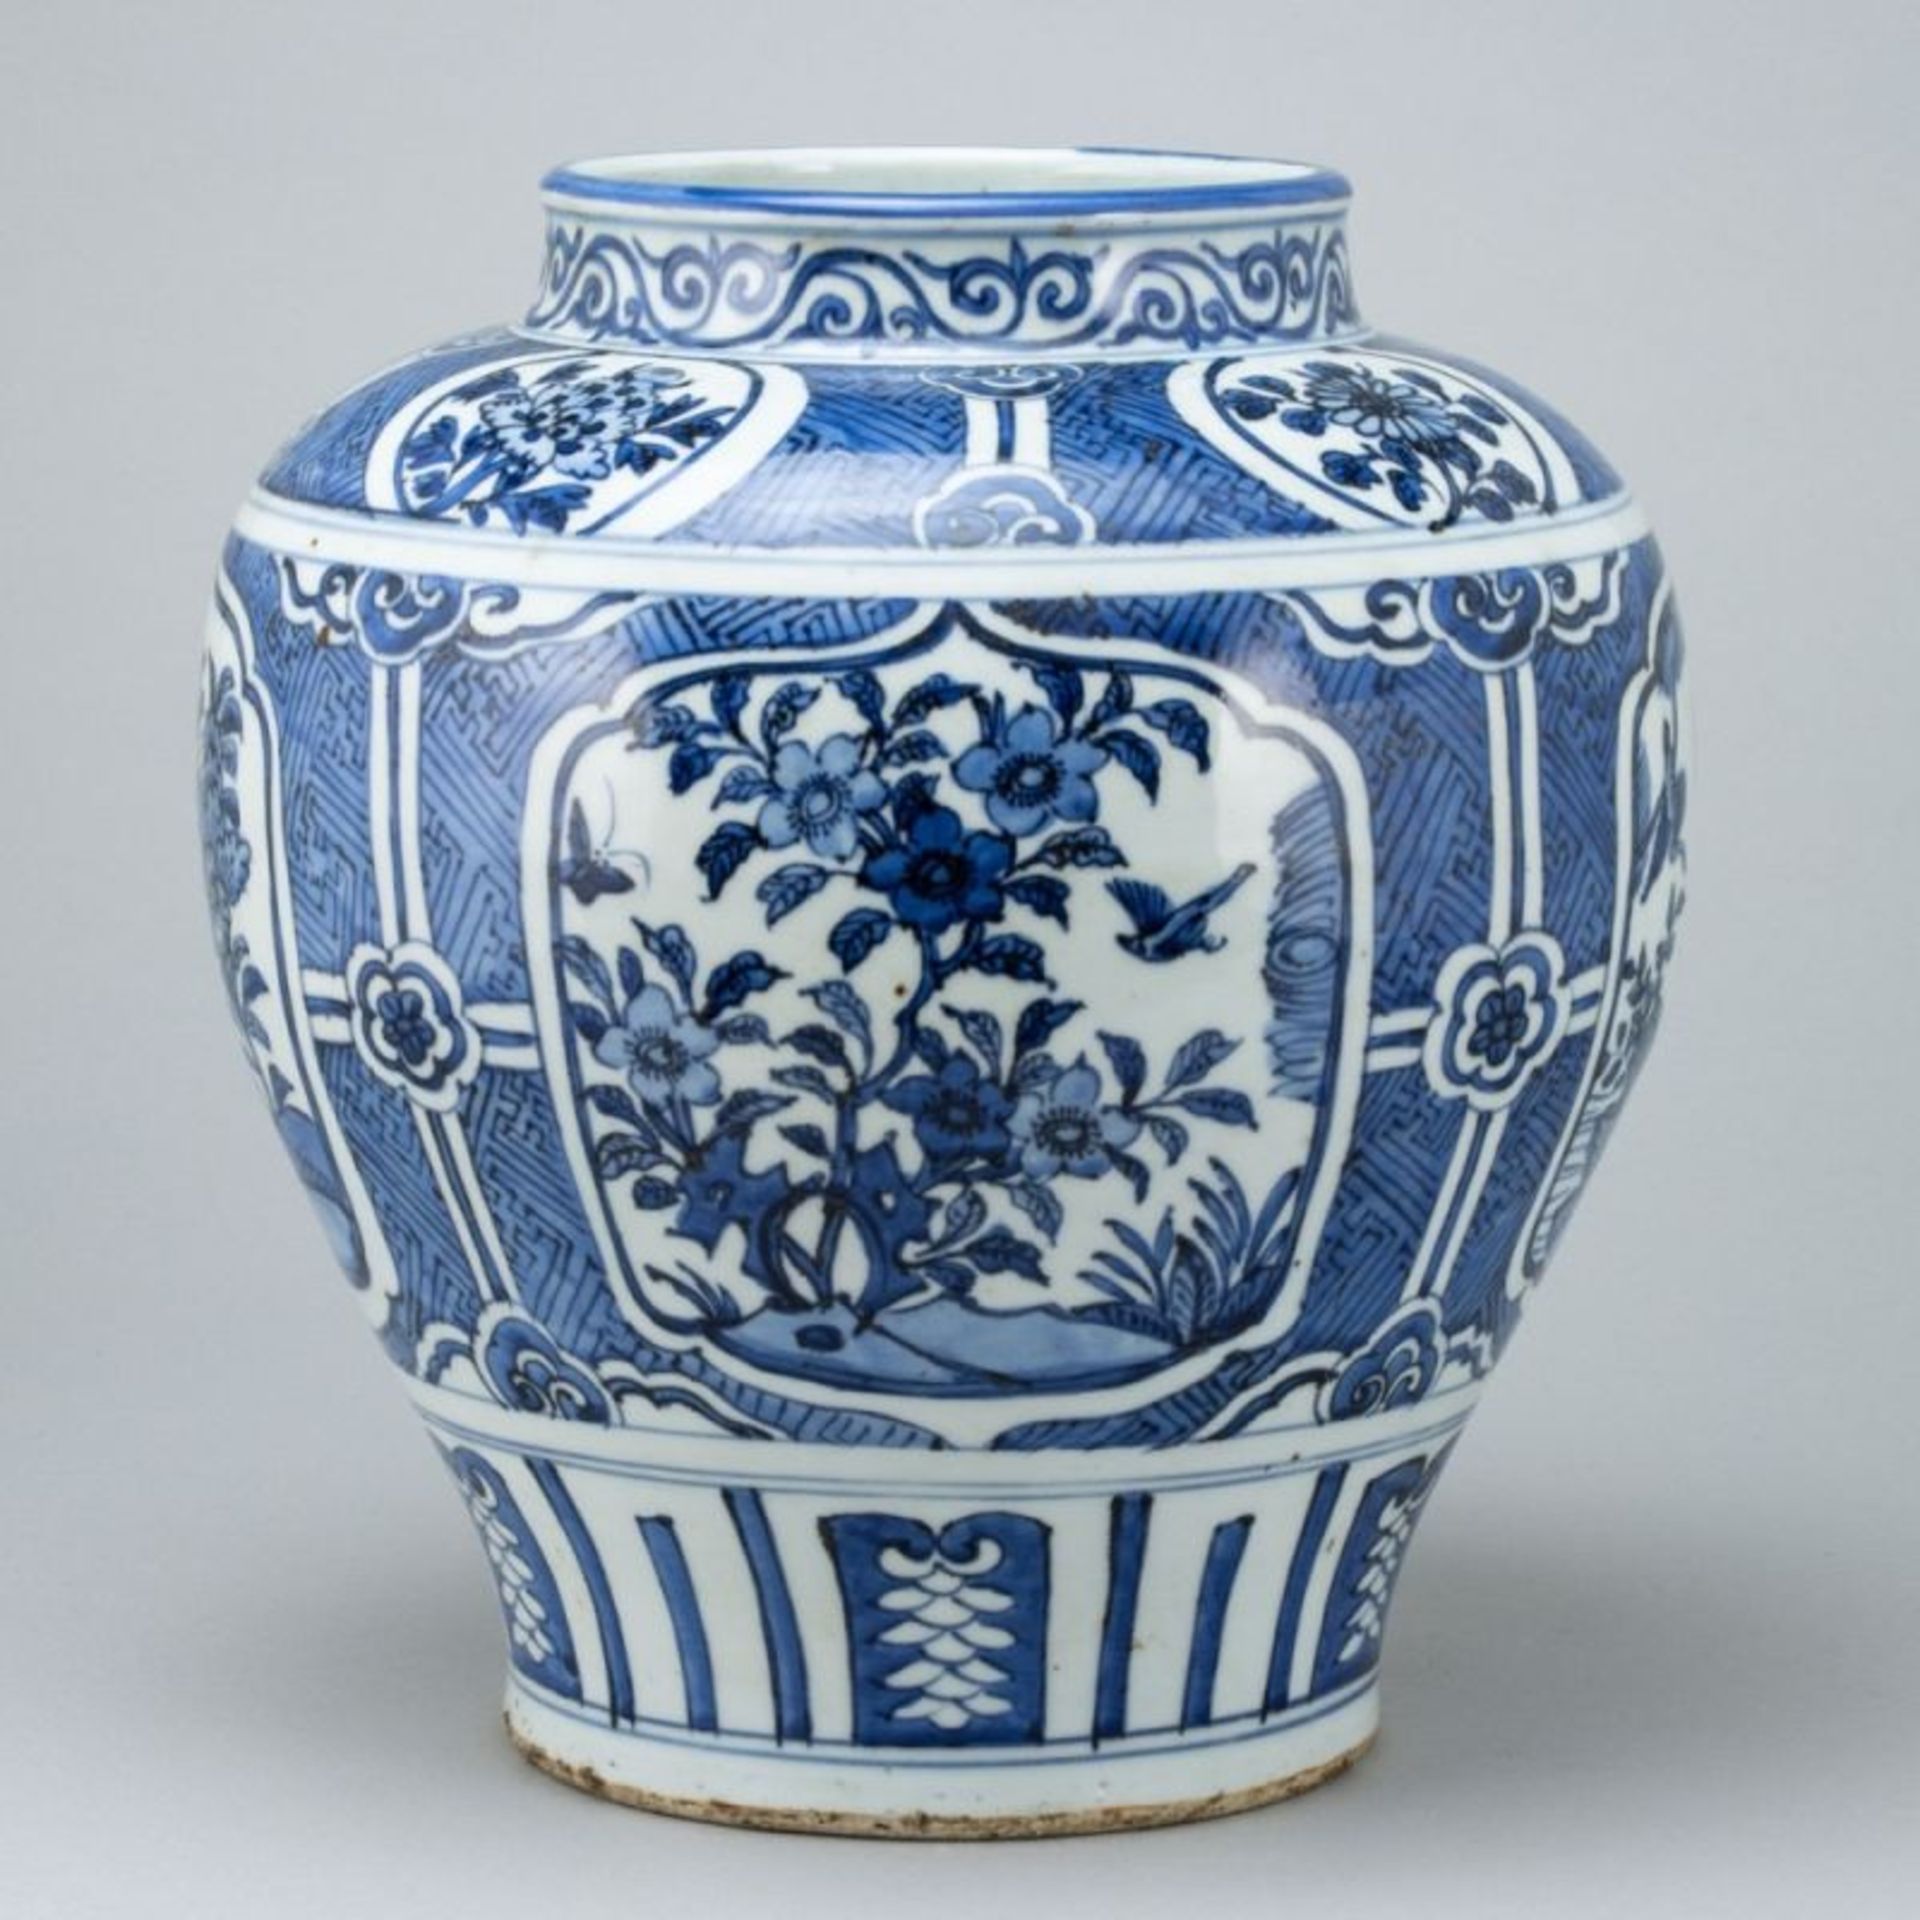 Balustervase / Weinkrug im Ming-Stil, China, 19. Jahrhundert - Bild 2 aus 2